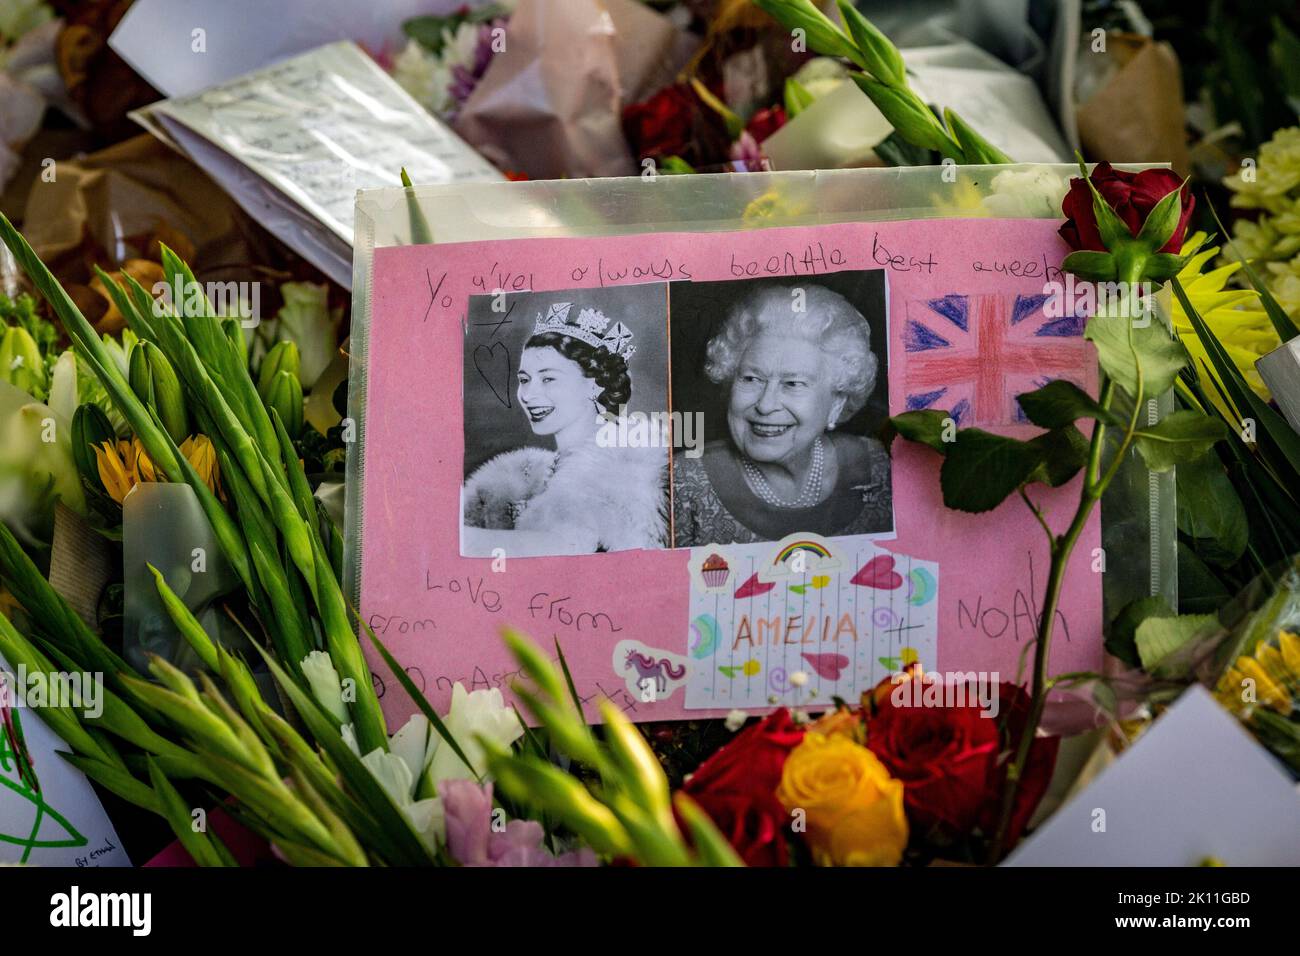 Londra, Regno Unito. 14th Set, 2022. Migliaia di persone hanno lasciato omaggi floreali, cartoline e messaggi per sua Maestà la Regina Elisabetta II, morta il 8th settembre, all'età di 96 anni. Friedrichs Alamy Live News Foto Stock